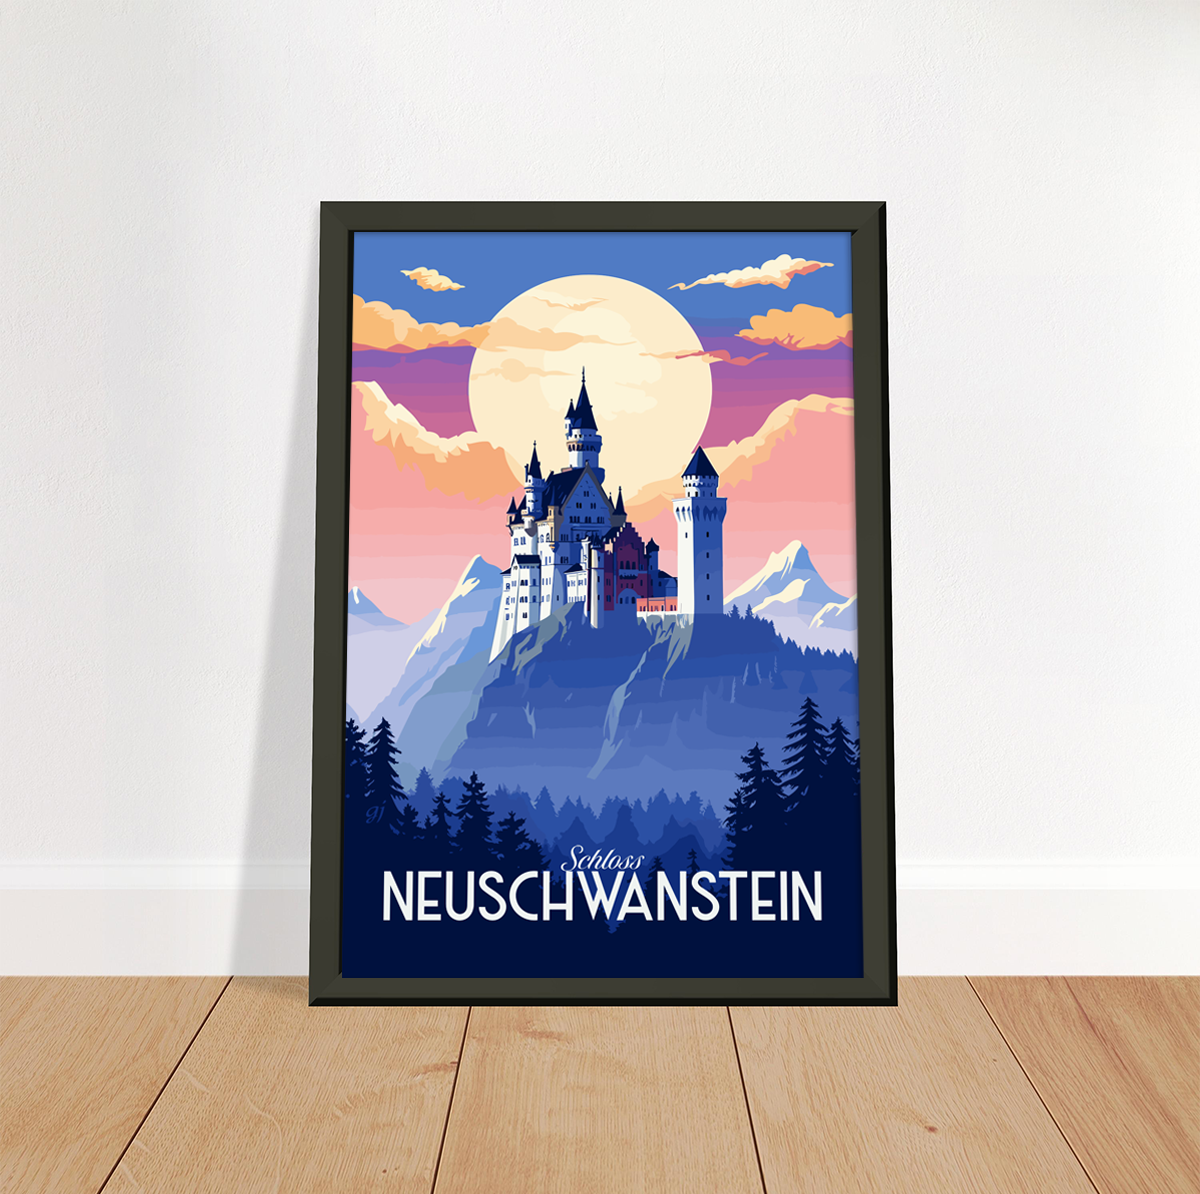 Neuschwanstein poster by bon voyage design